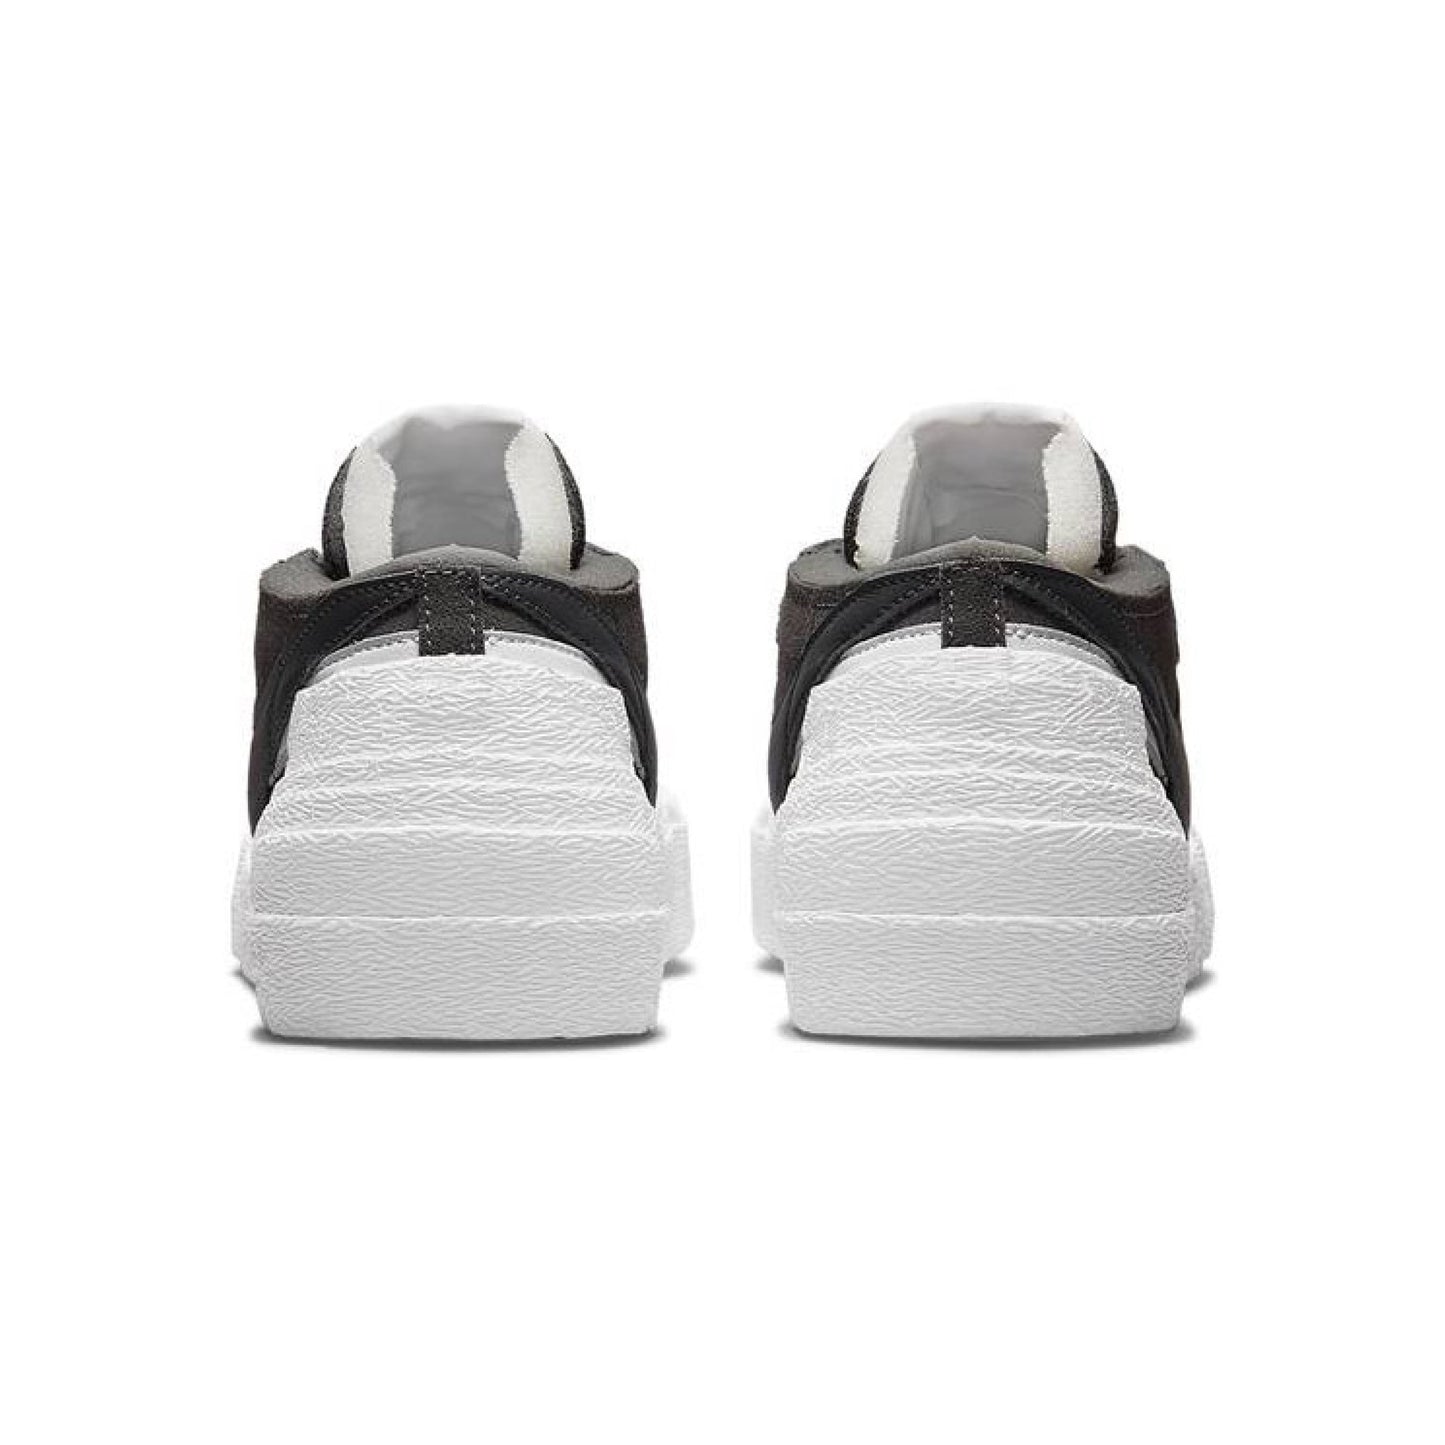 Nike x Sacai Blazer Low 'Iron Grey'